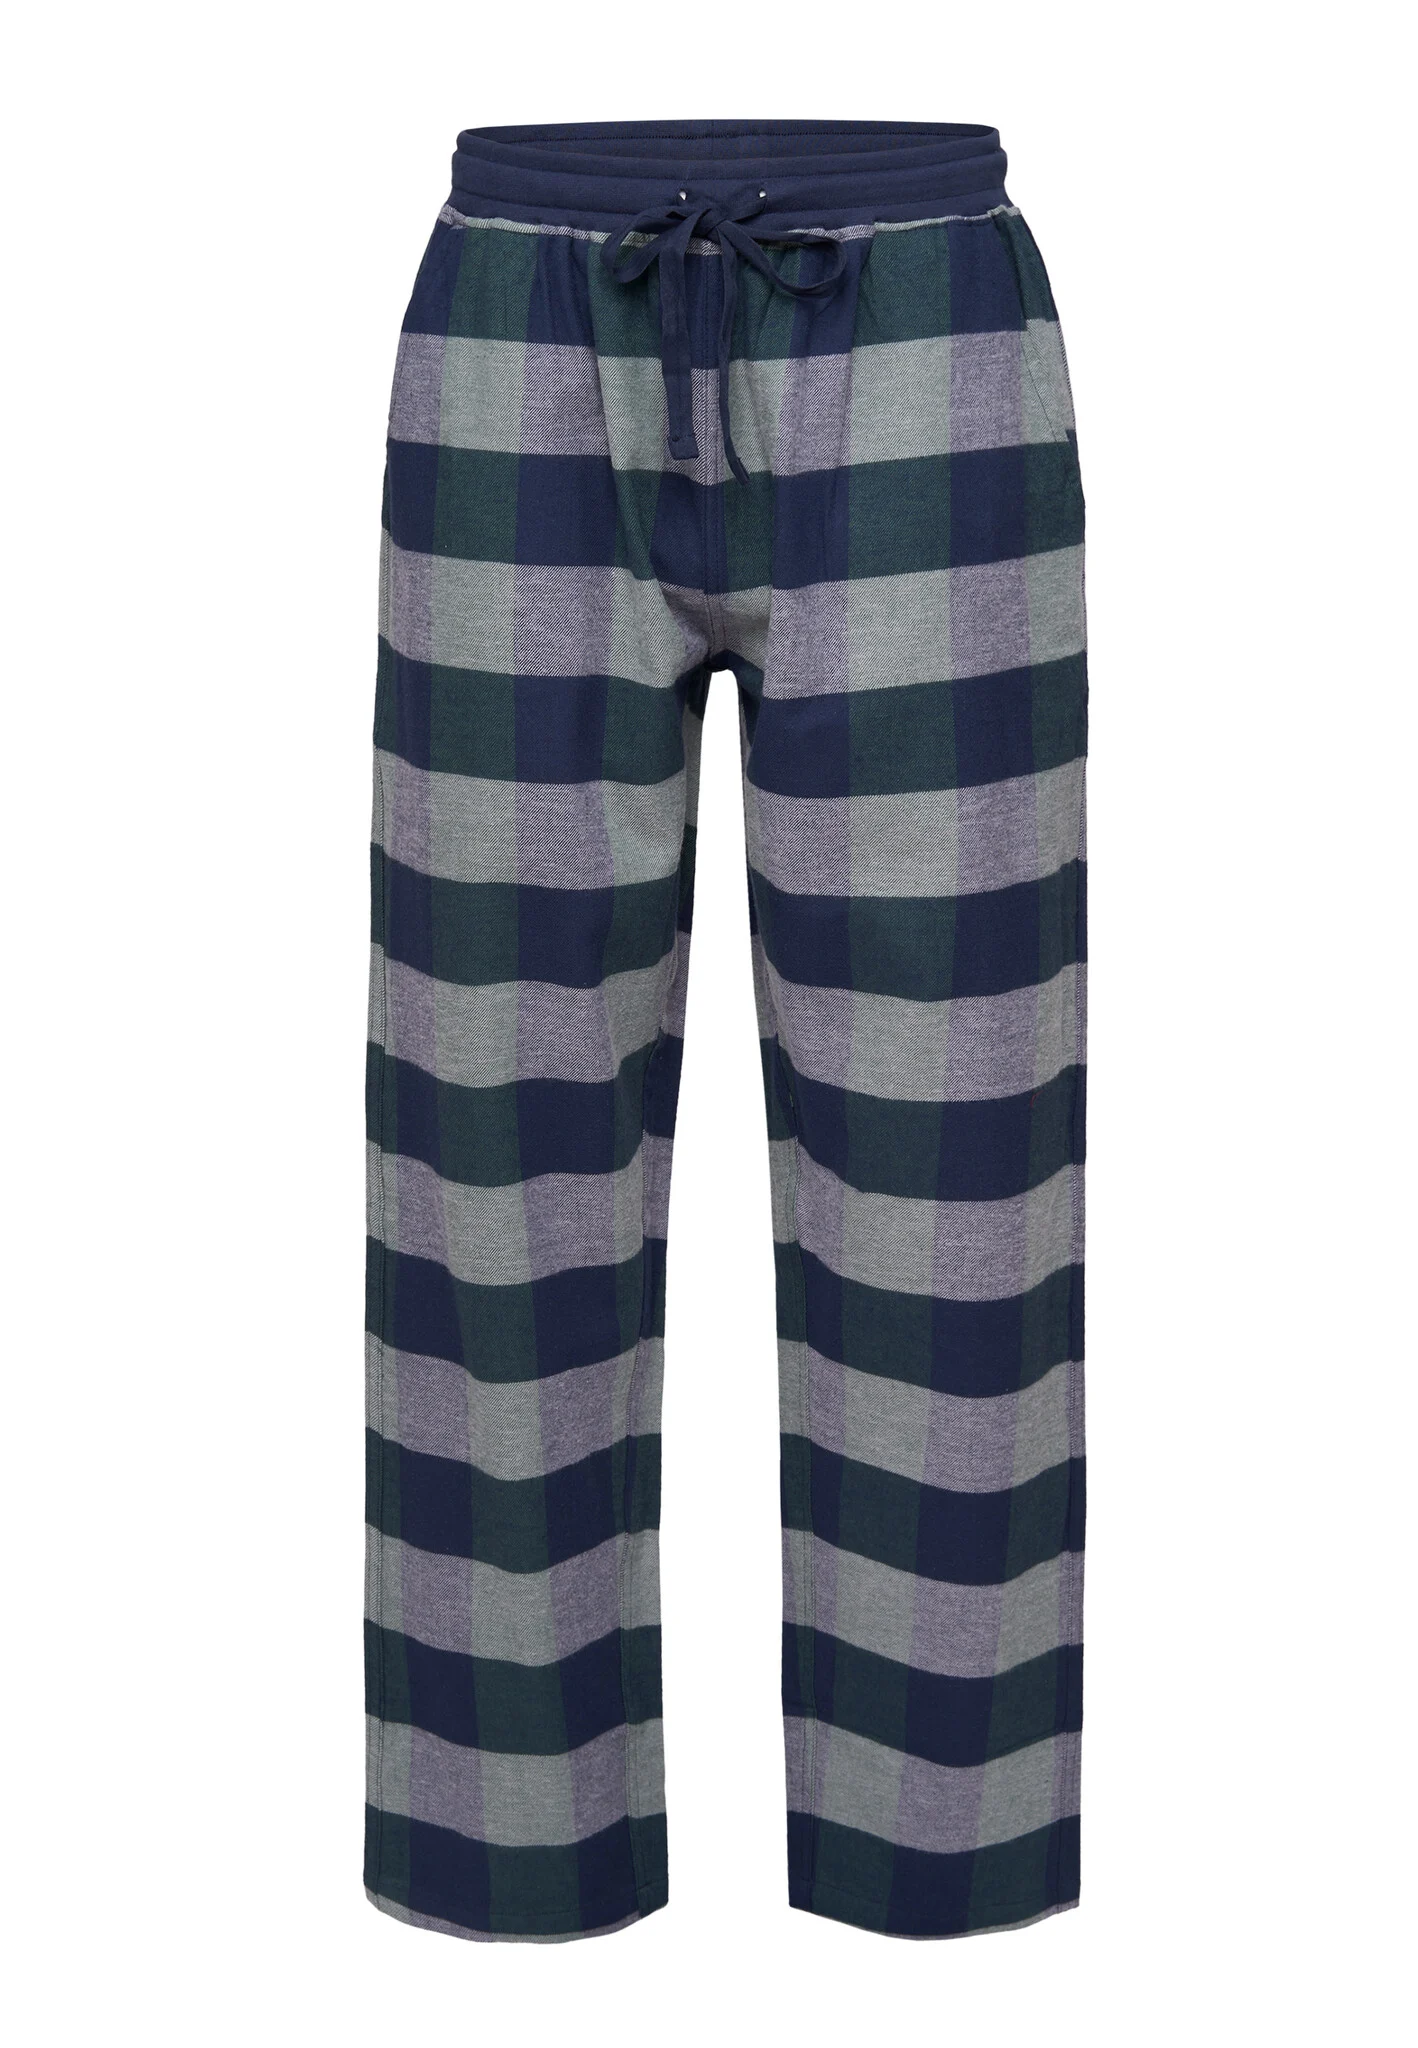 Afbeelding van Phil & Co Heren pyjamabroek lang geruit flanel blauw/groen